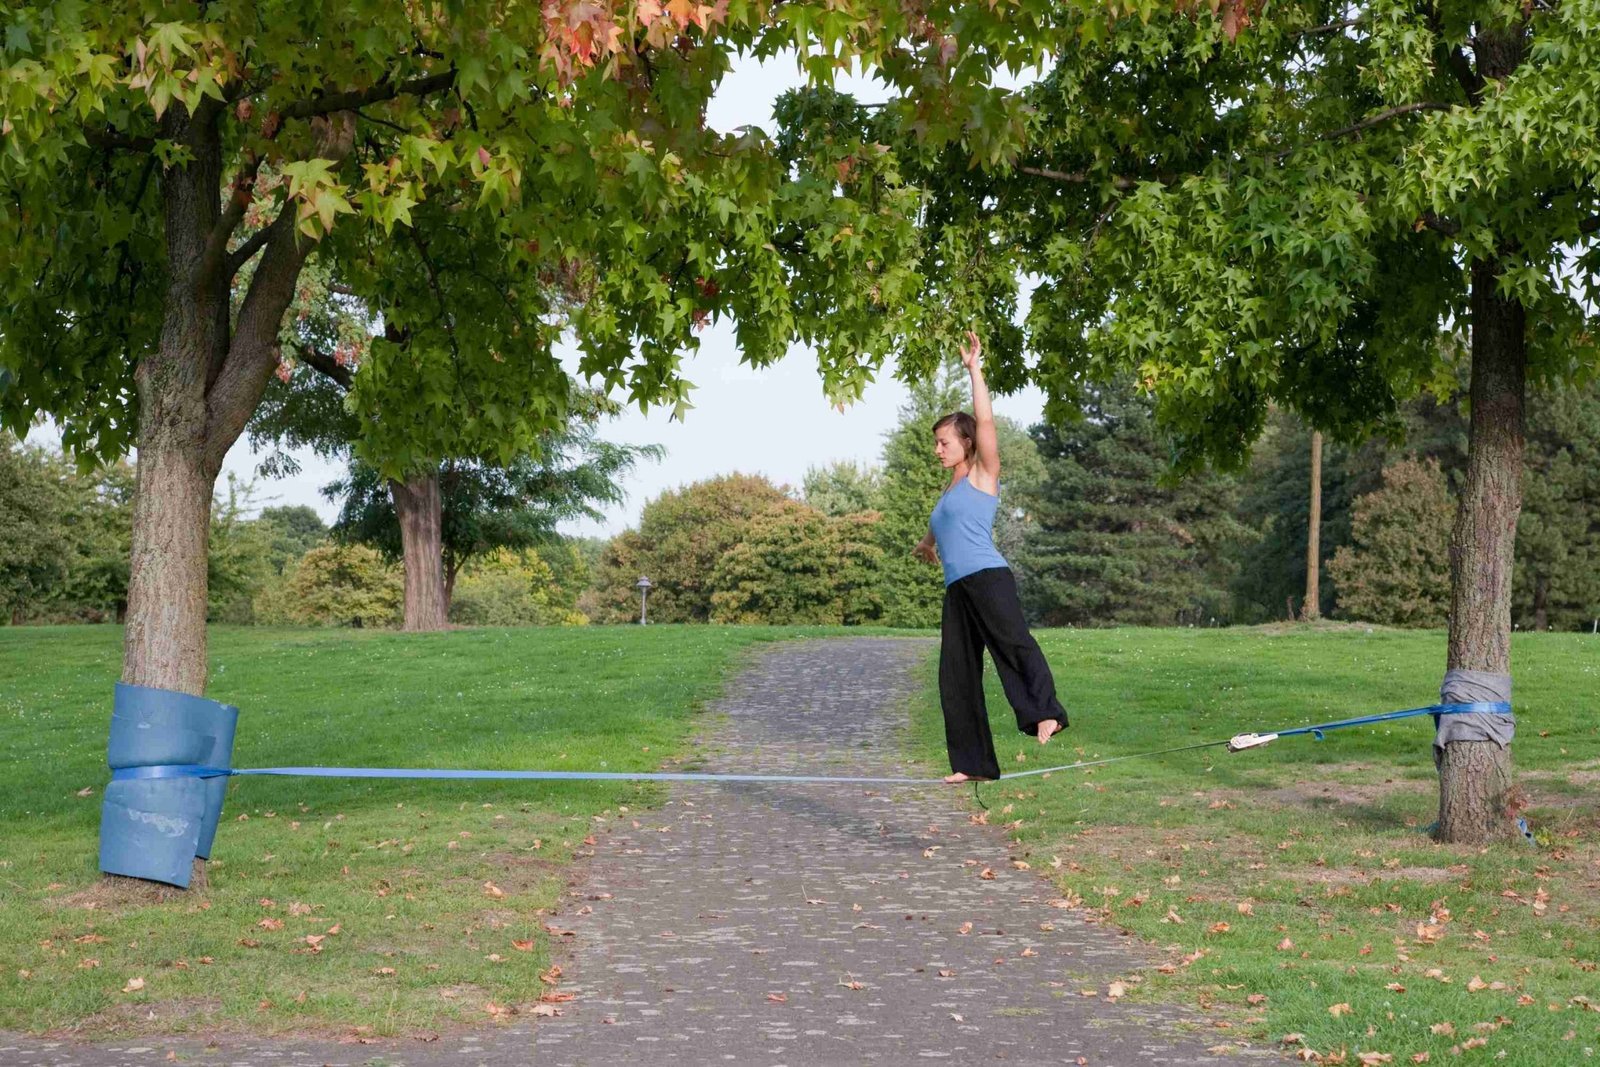 Quer treinar equilíbrio? Confira as nossas 5 dicas de exercício!